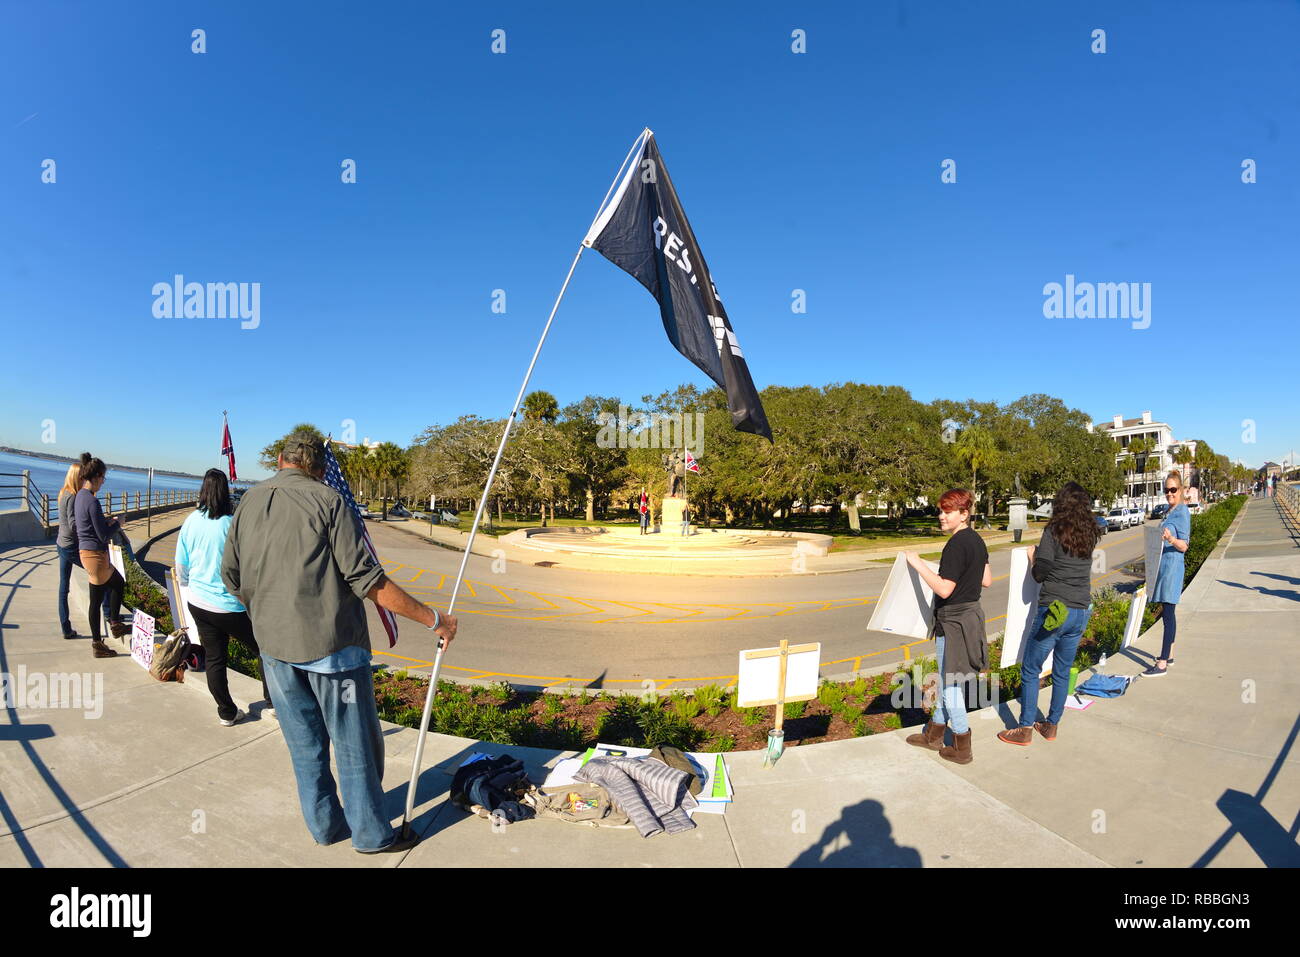 Partito secessionista sostenitori Display bandiere Confederate e American lealisti visualizzare la bandiera americana mentre il lavoro procede dalla piattaforma in acqua Foto Stock